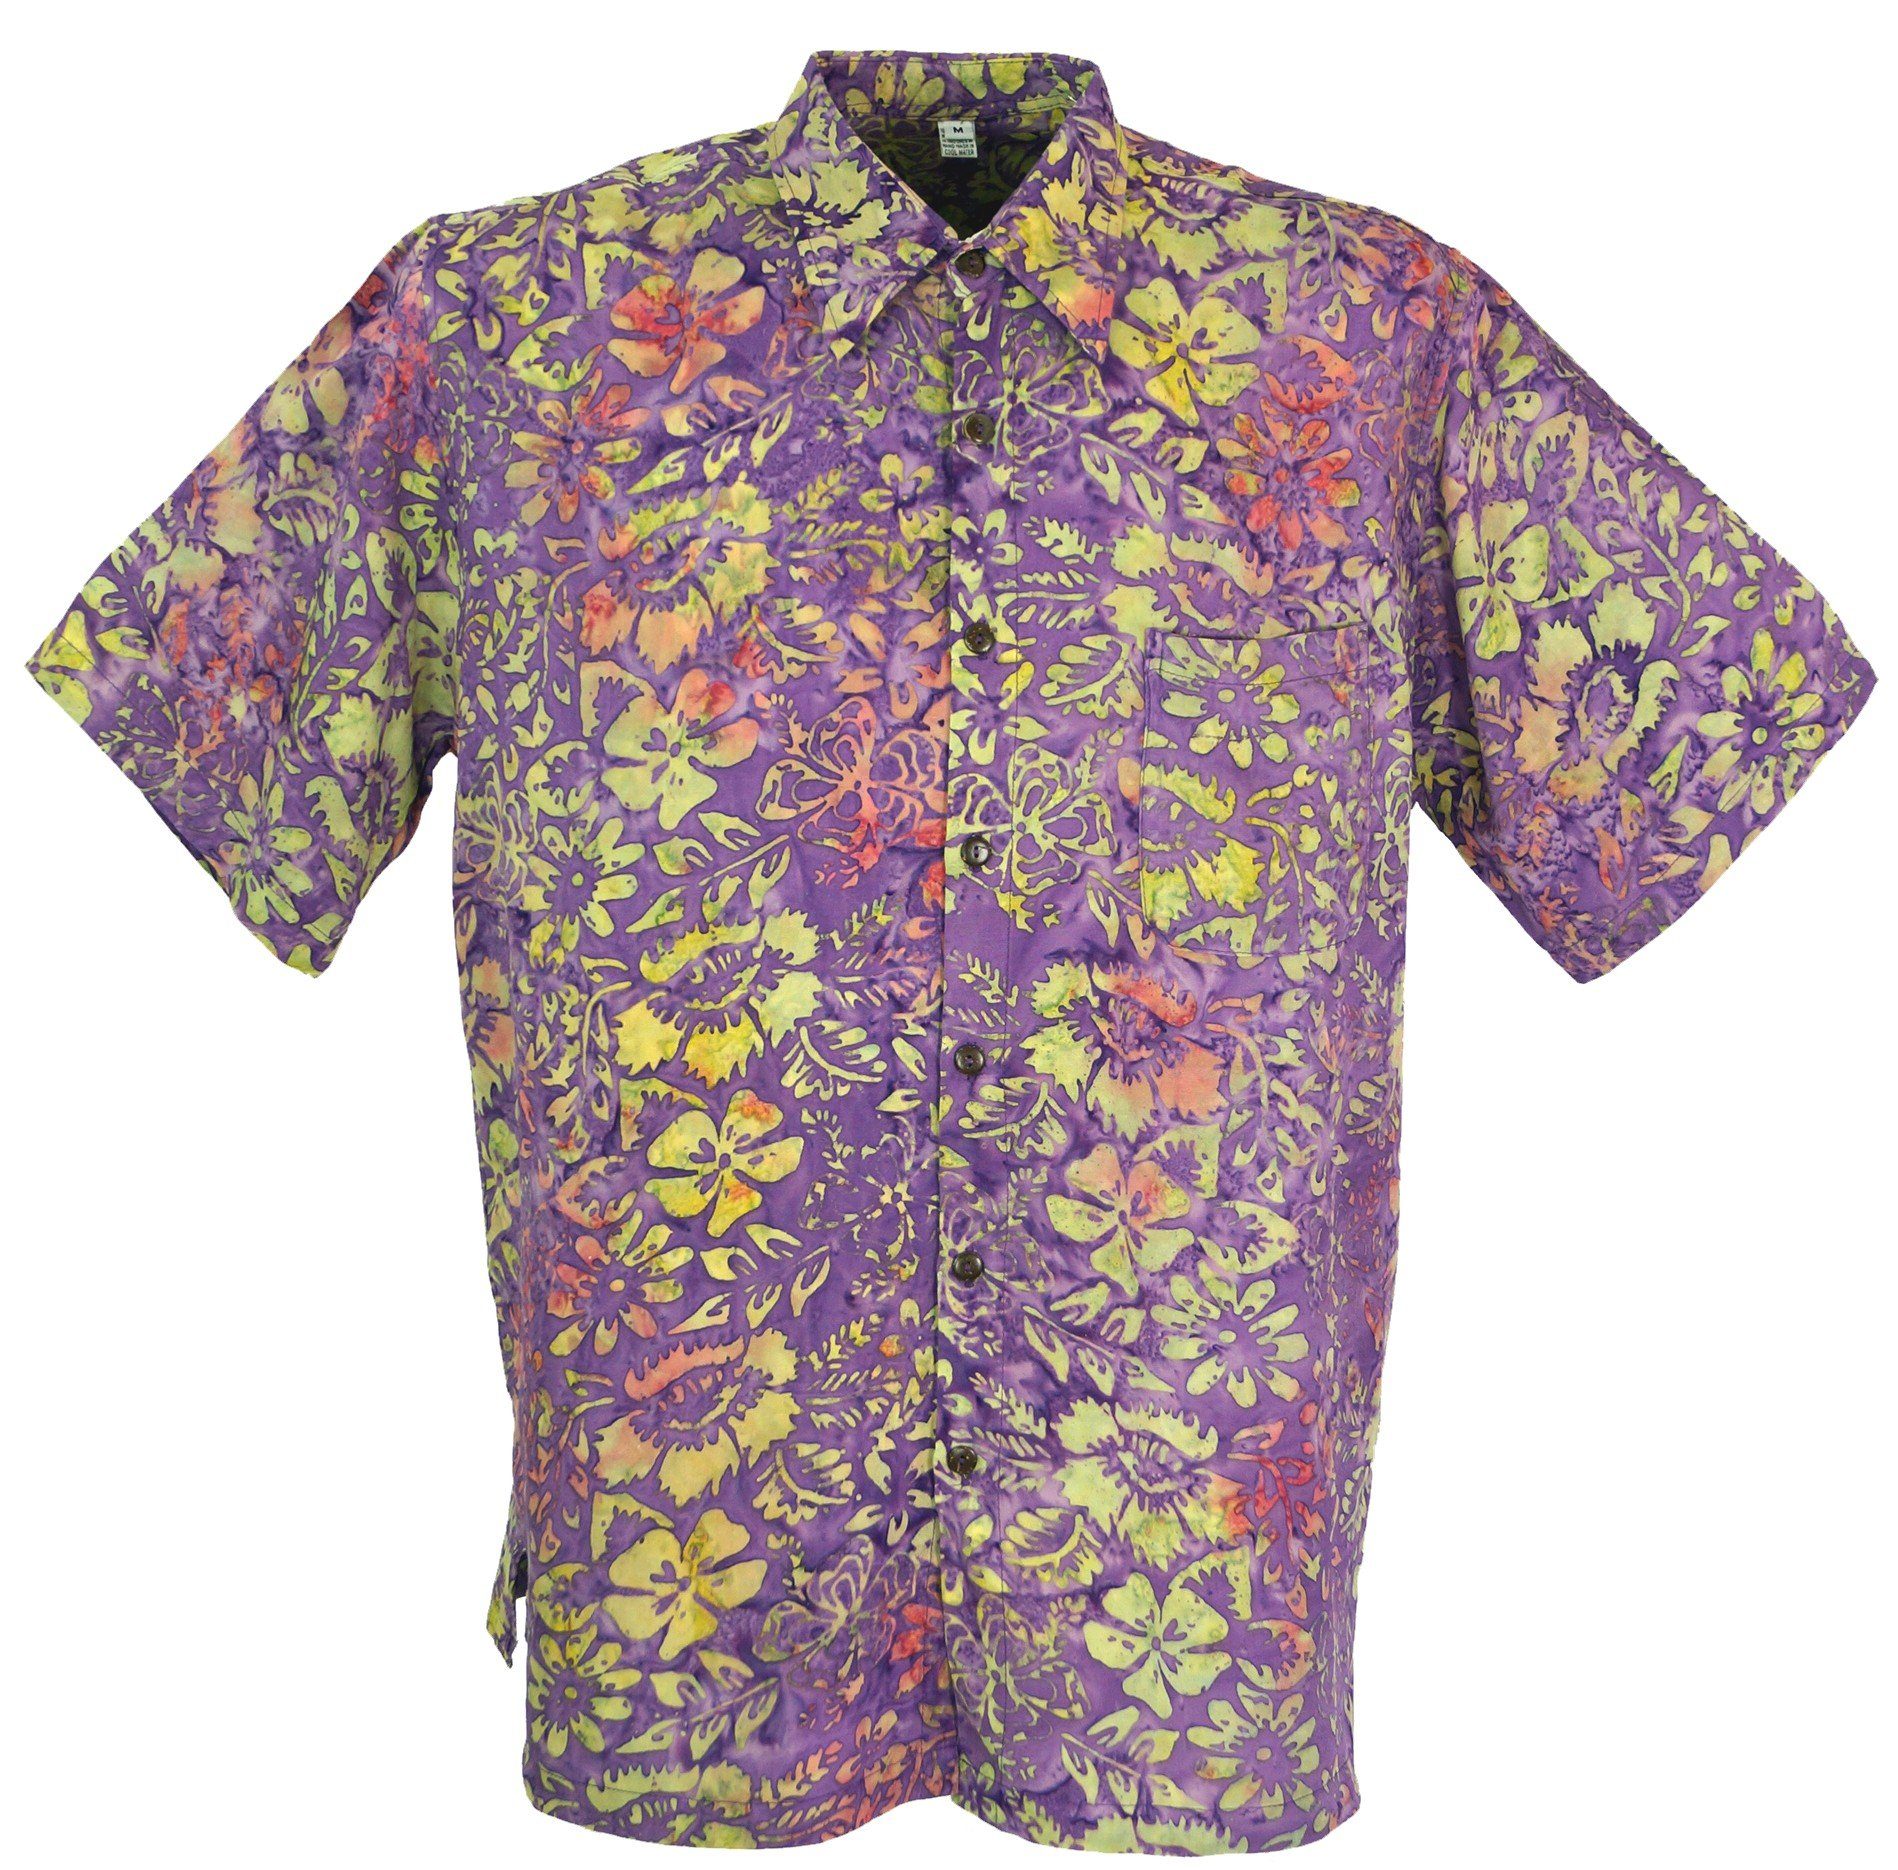 Guru-Shop Hemd & Shirt Hippiehemd, Hawaiihemd, Batik Hemd - flieder/gelb alternative Bekleidung, Hippie, Ethno Style